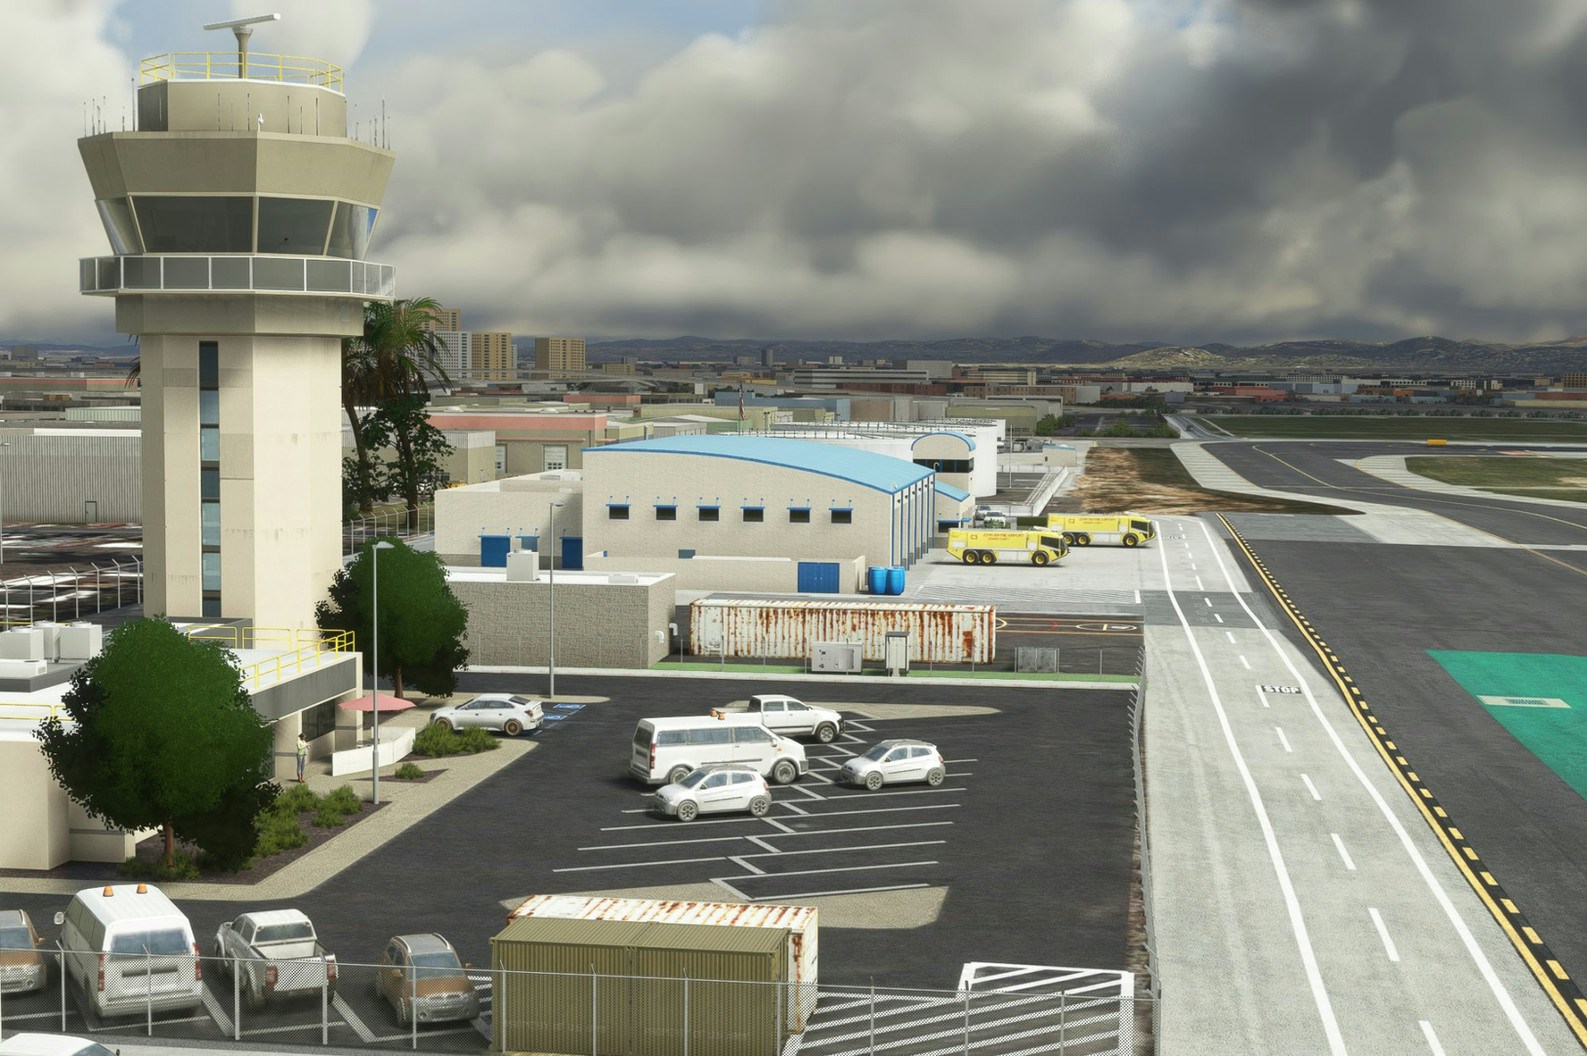 UK2000 Scenery Releases John Wayne Airport for MSFS